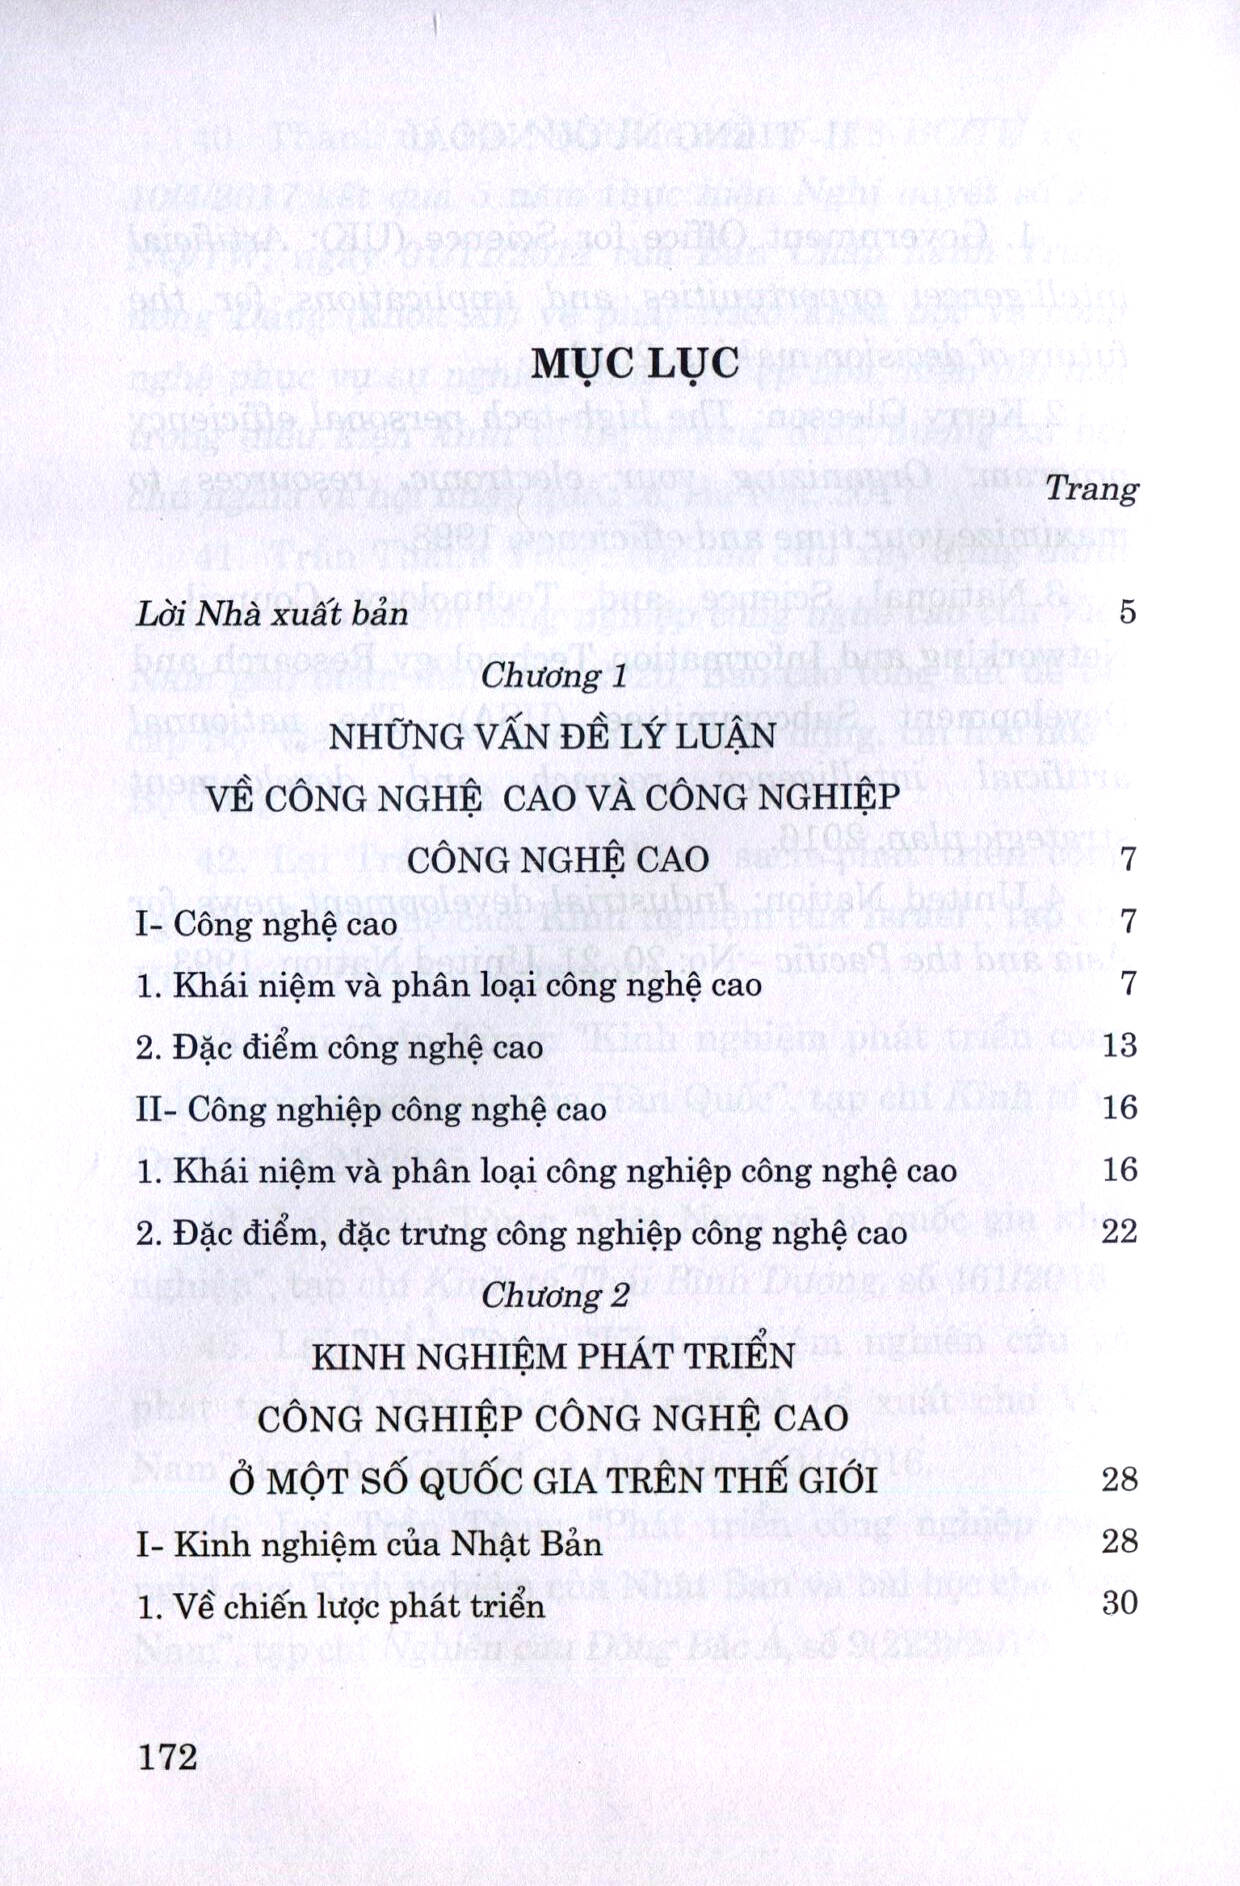 Phát Triển Công Nghiệp Công Nghệ Cao - Kinh Nghiệm Và Bài Học Cho Việt Nam PDF